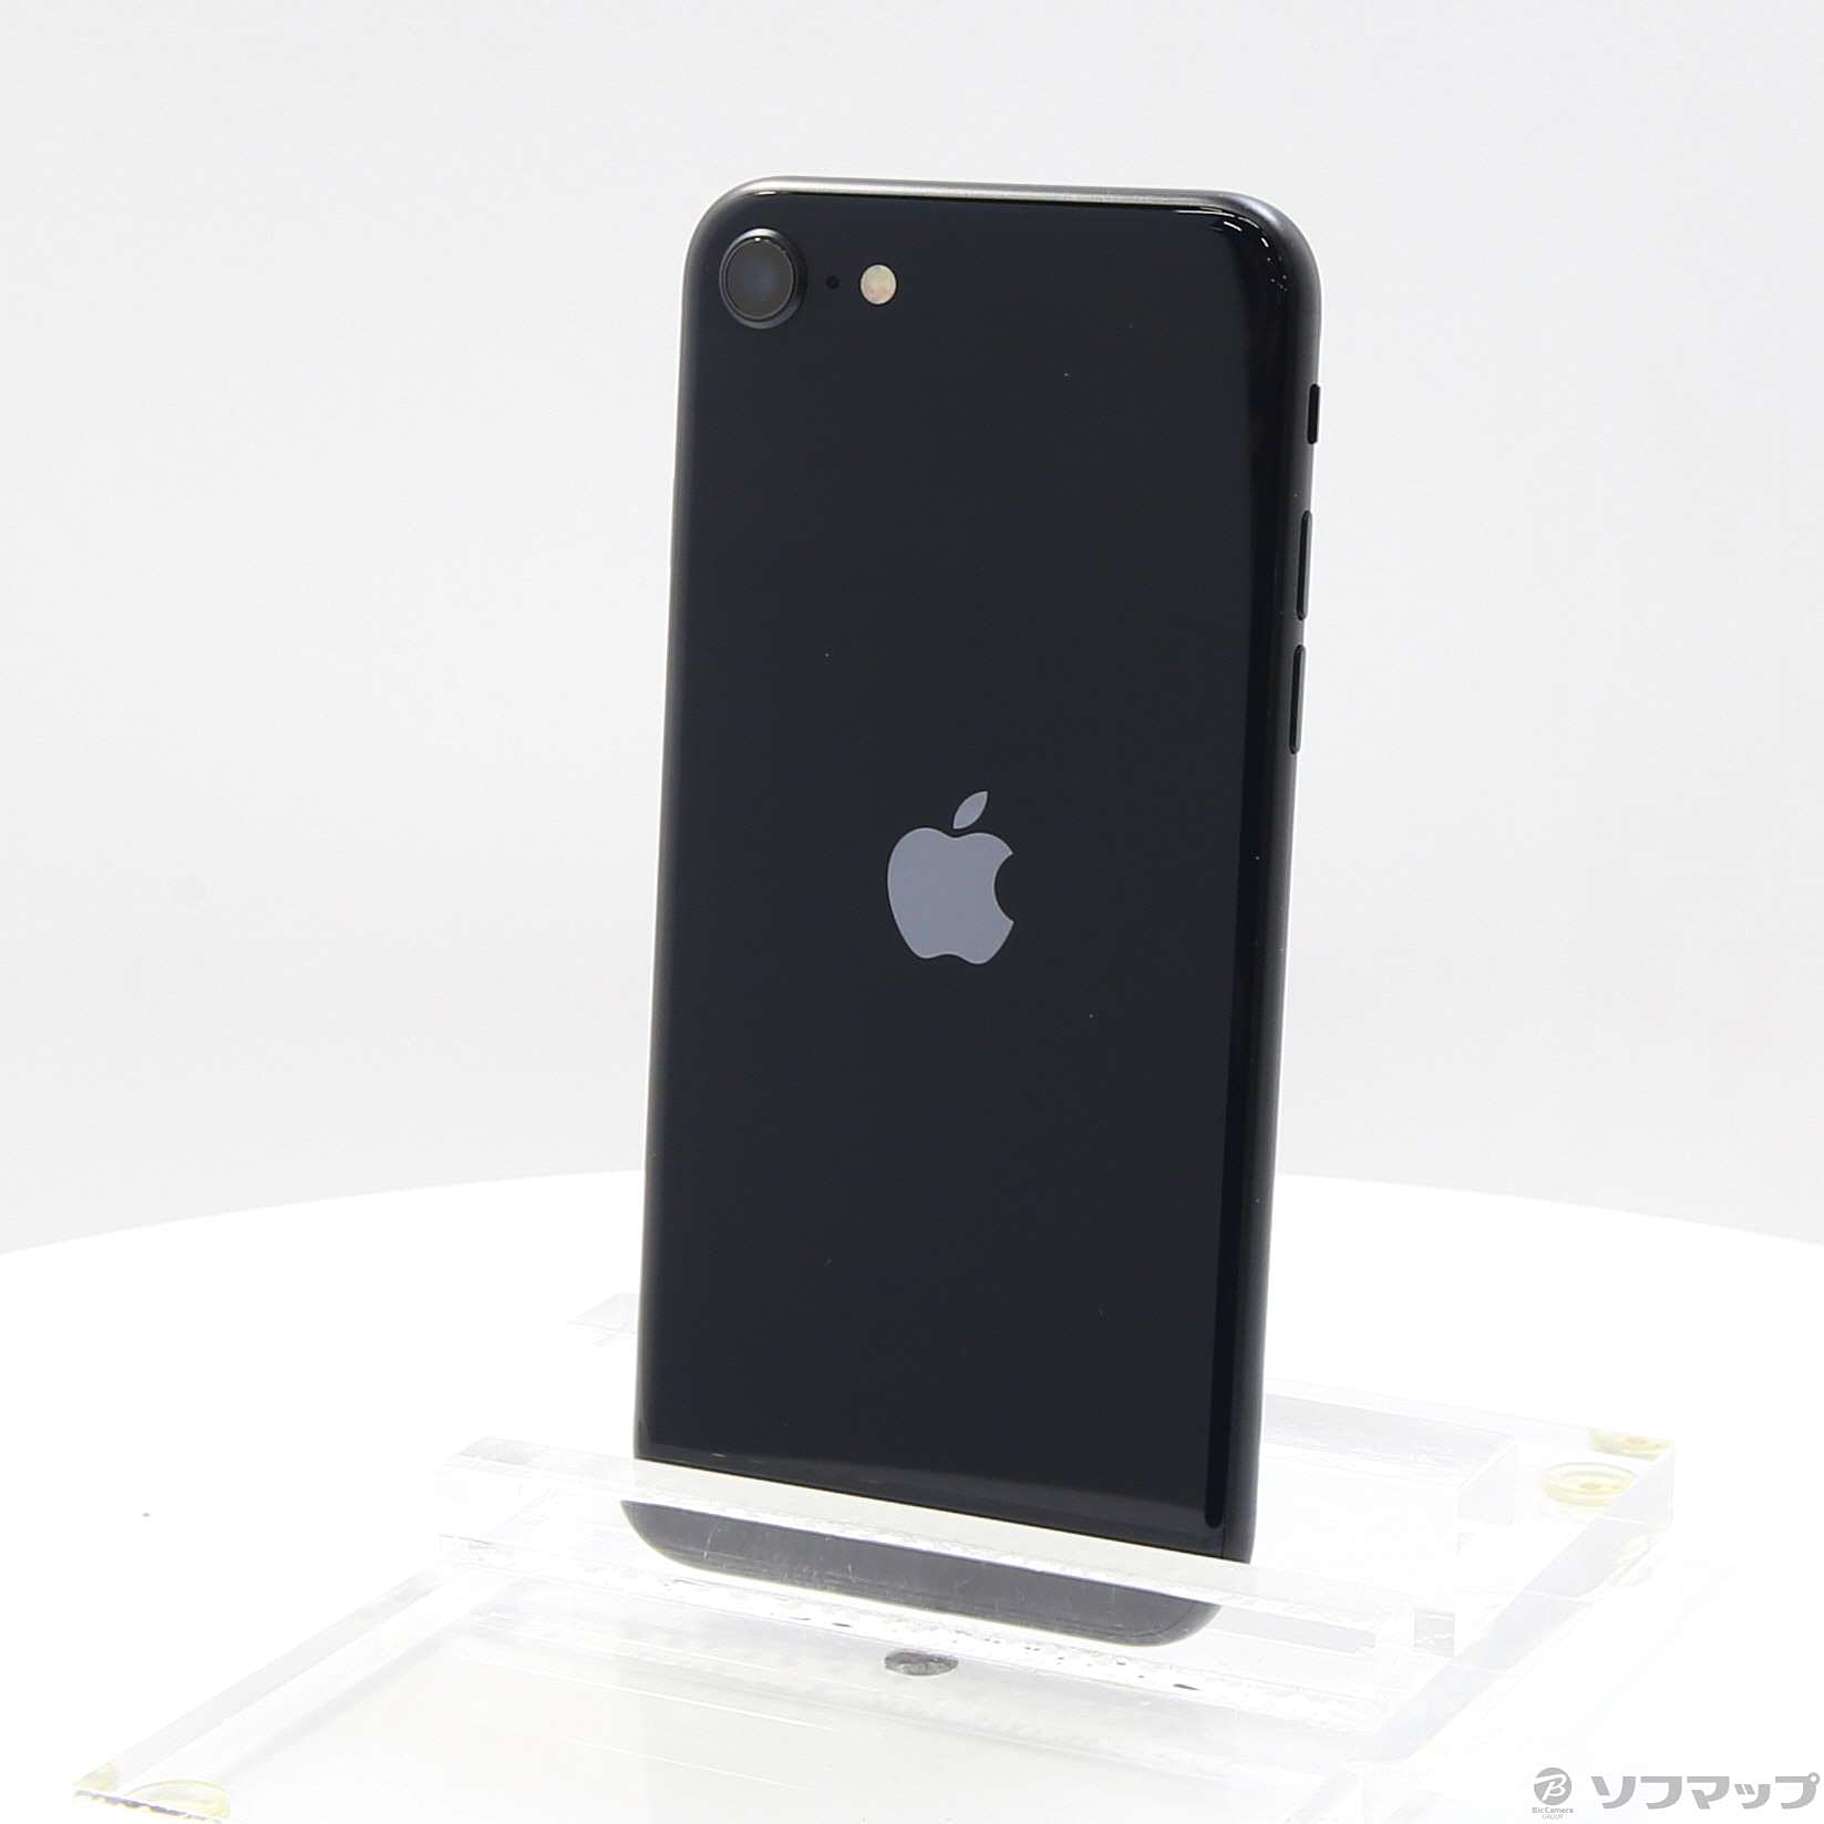 iPhone SE (第3世代) ミッドナイト 64 GB SIMフリー